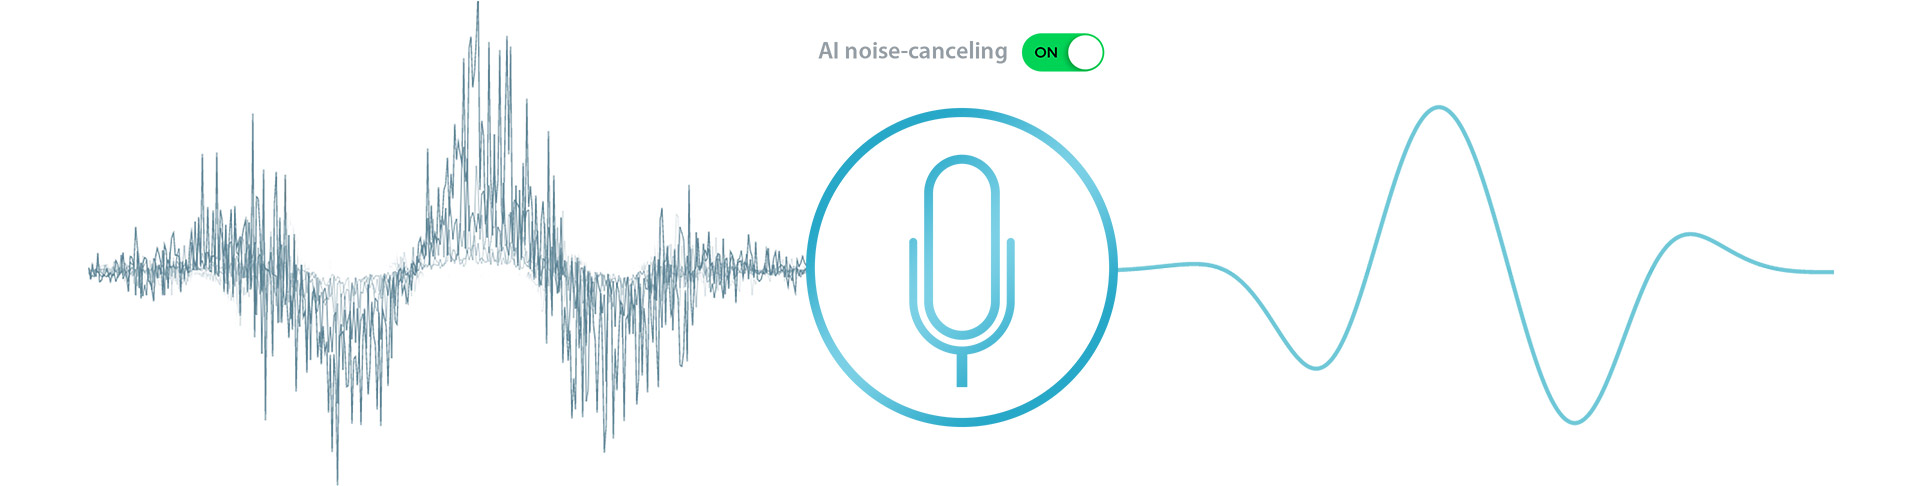 imagem ilustrativa cancelamento de ruído